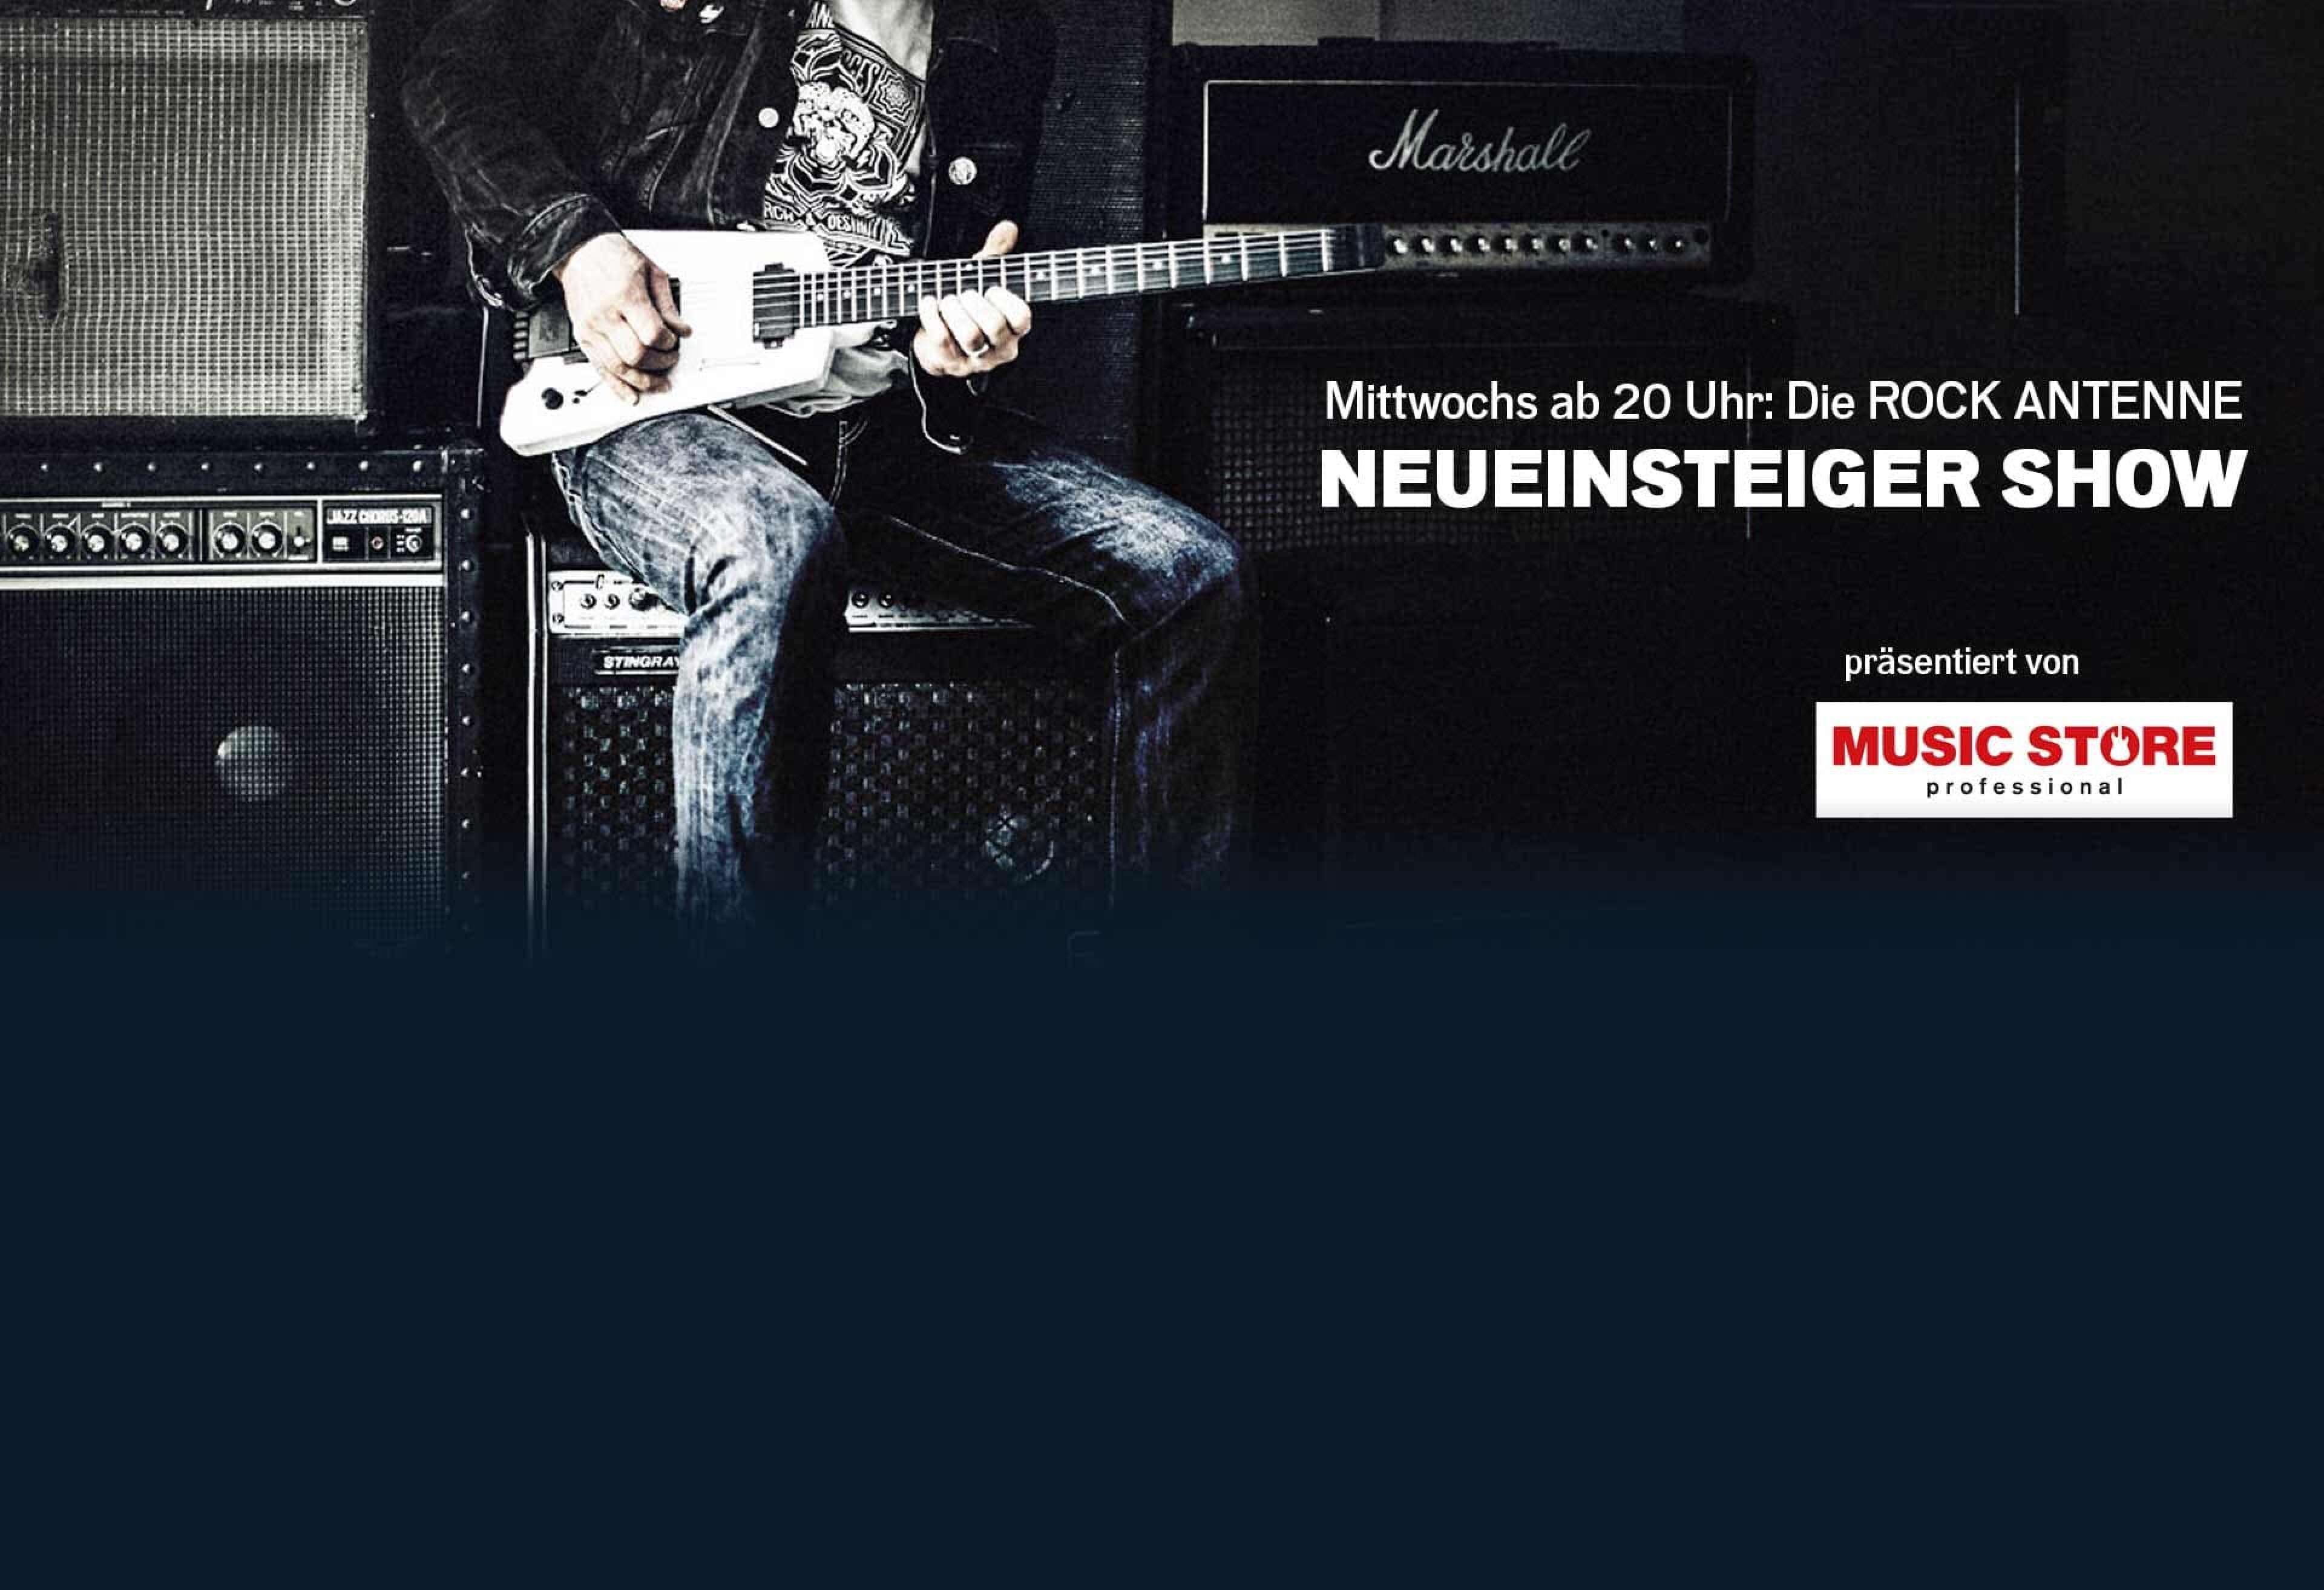 Bildausschnitt eines jungen Mannes, der auf einem Verstärker sitzt und Gitarre spielt, dazu der Text: "Mittwochs ab 20 Uhr: Die ROCK ANTENNE NEUEINSTEIGER SHOW, präsentiert von Music Store Professional"